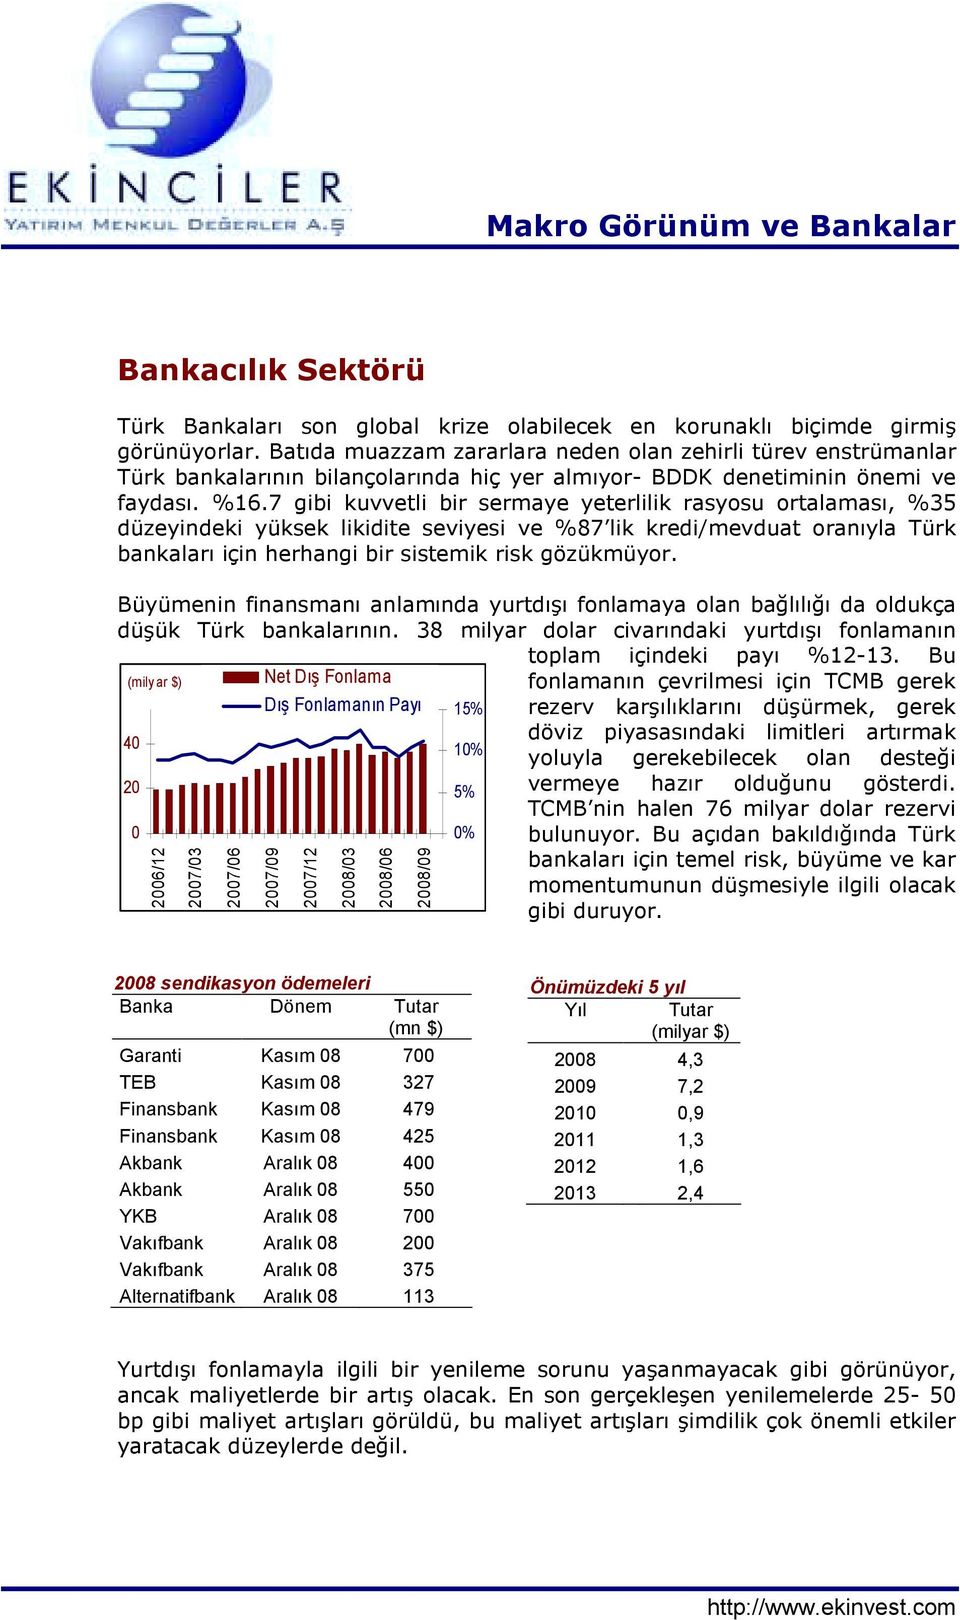 7 gibi kuvvetli bir sermaye yeterlilik rasyosu ortalamasõ, %35 düzeyindeki yüksek likidite seviyesi ve %87 lik kredi/mevduat oranõyla Türk bankalarõ için herhangi bir sistemik risk gözükmüyor.